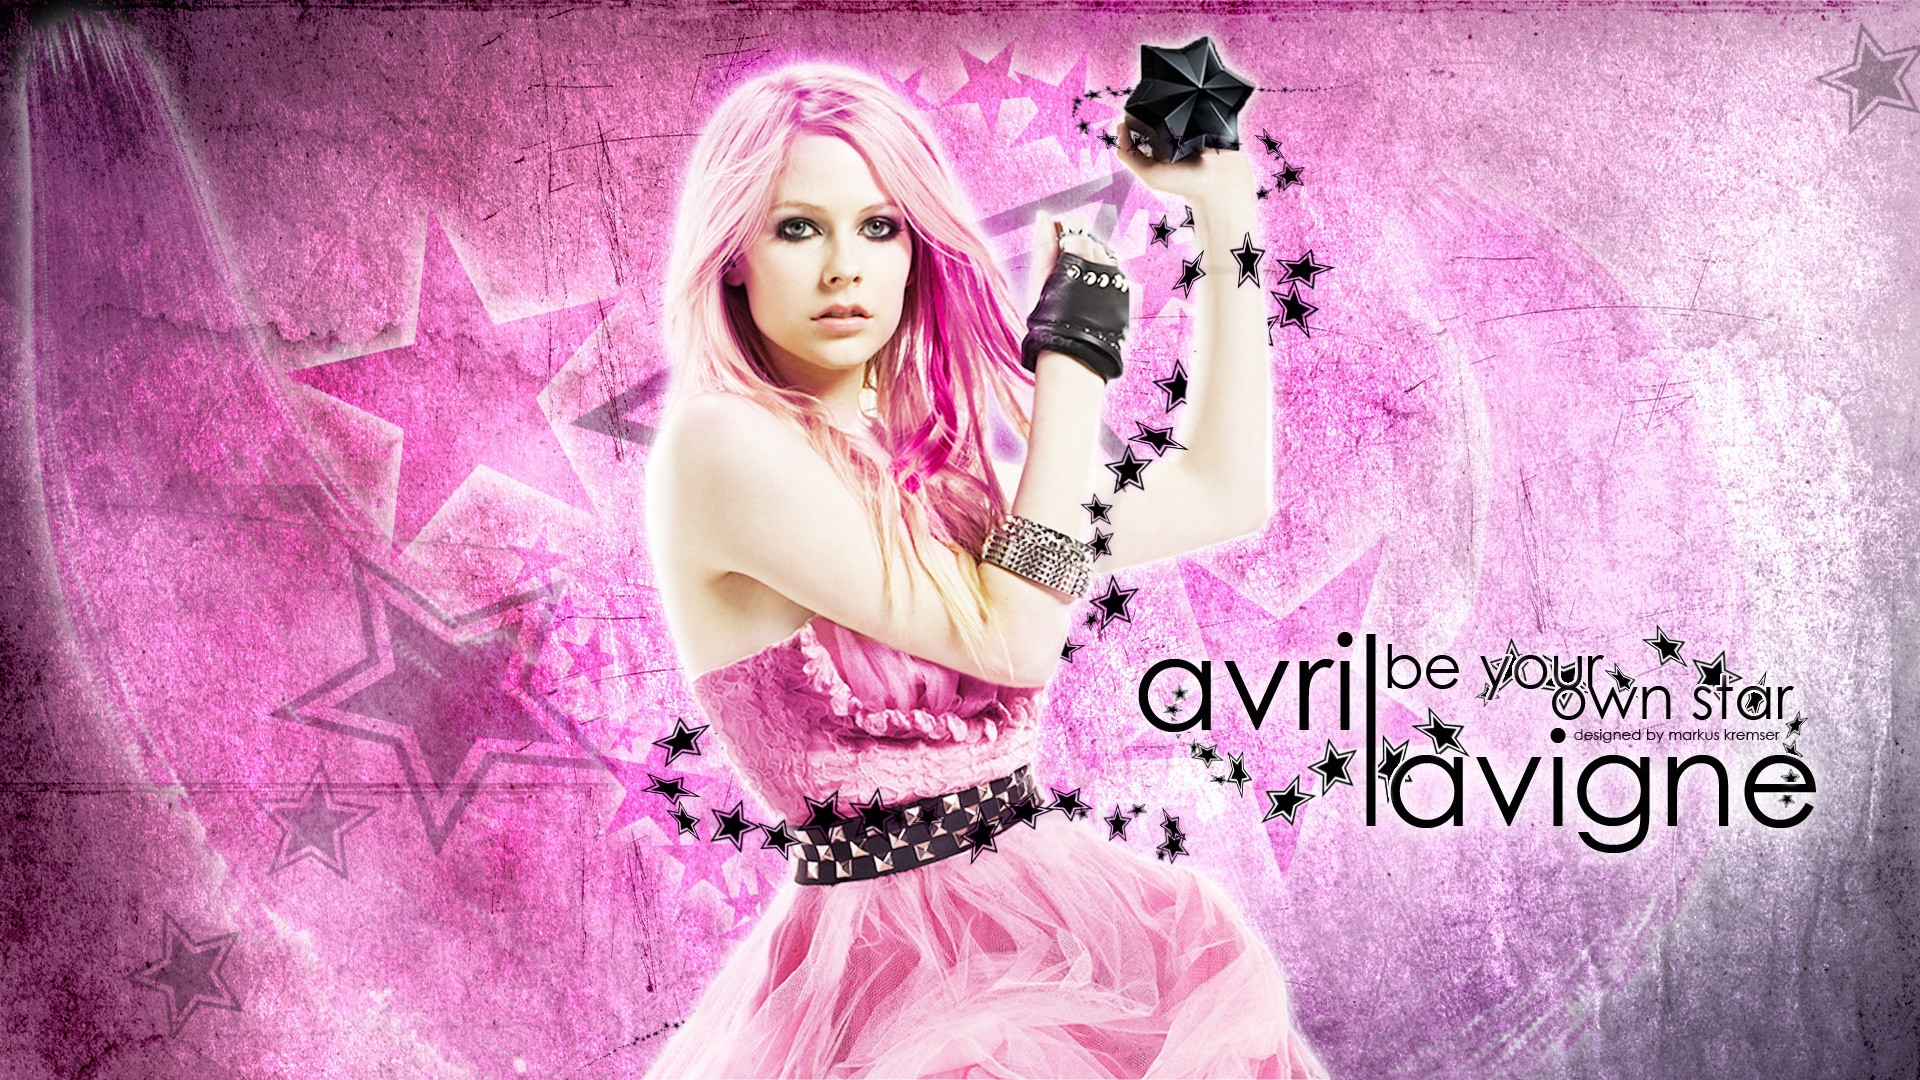 Avril Lavigne Black Star